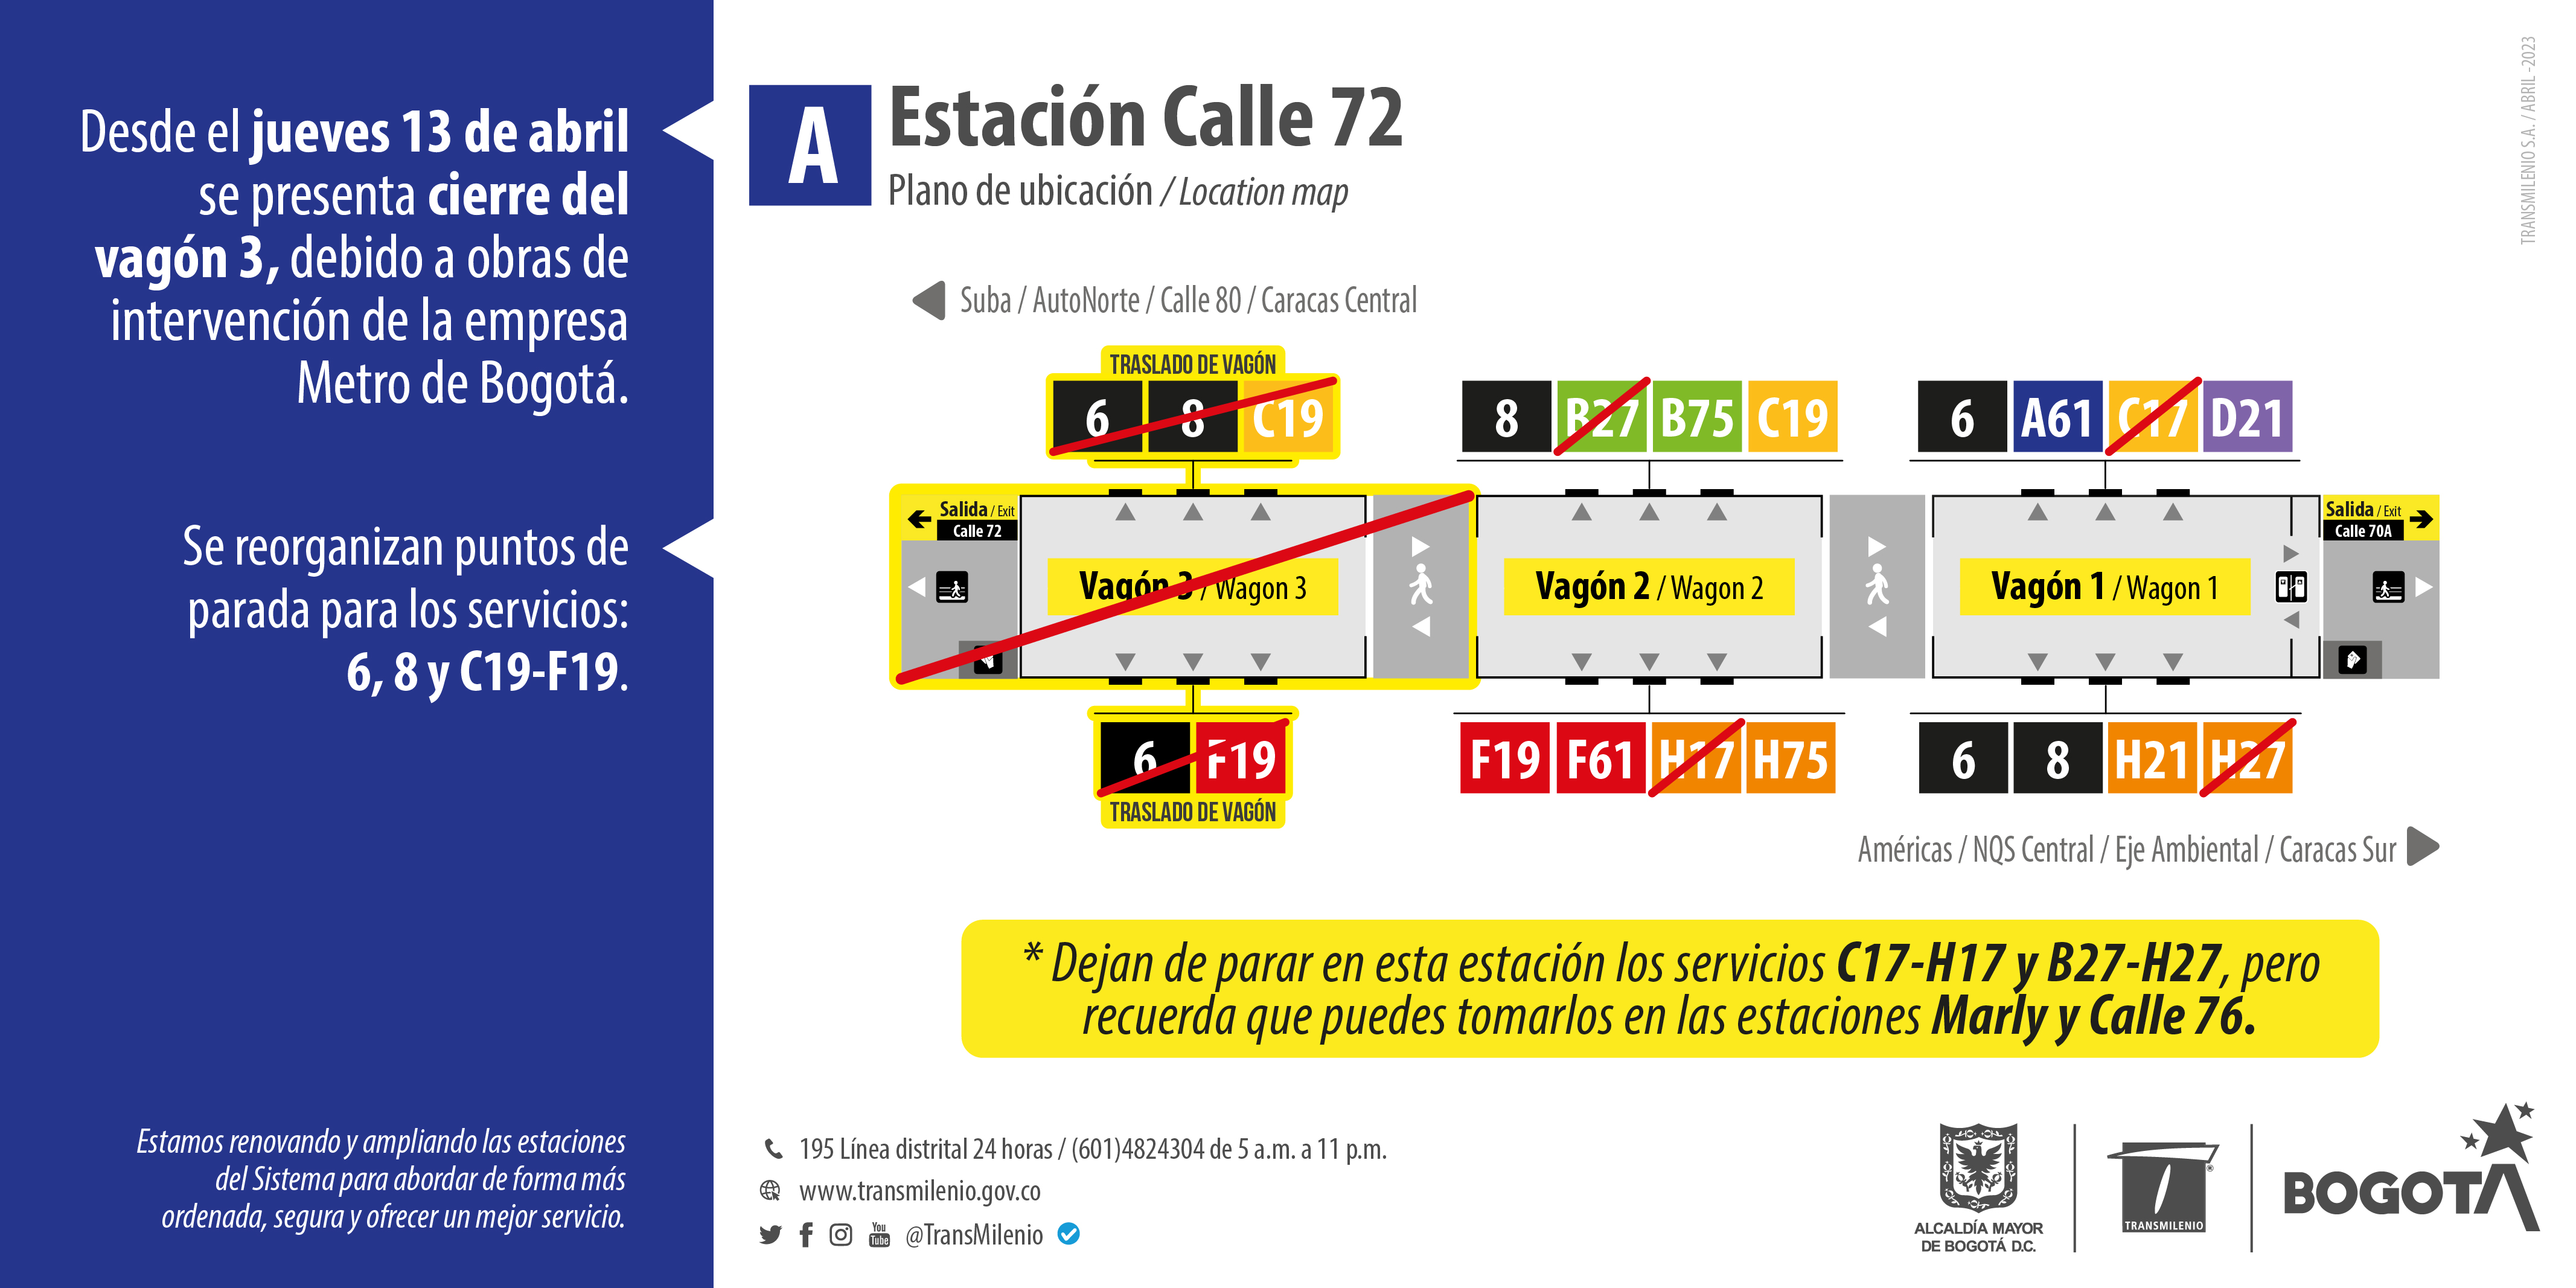 Estación Calle 72 tendrá modificaciones por obras de la Primera Línea del Metro de Bogotá